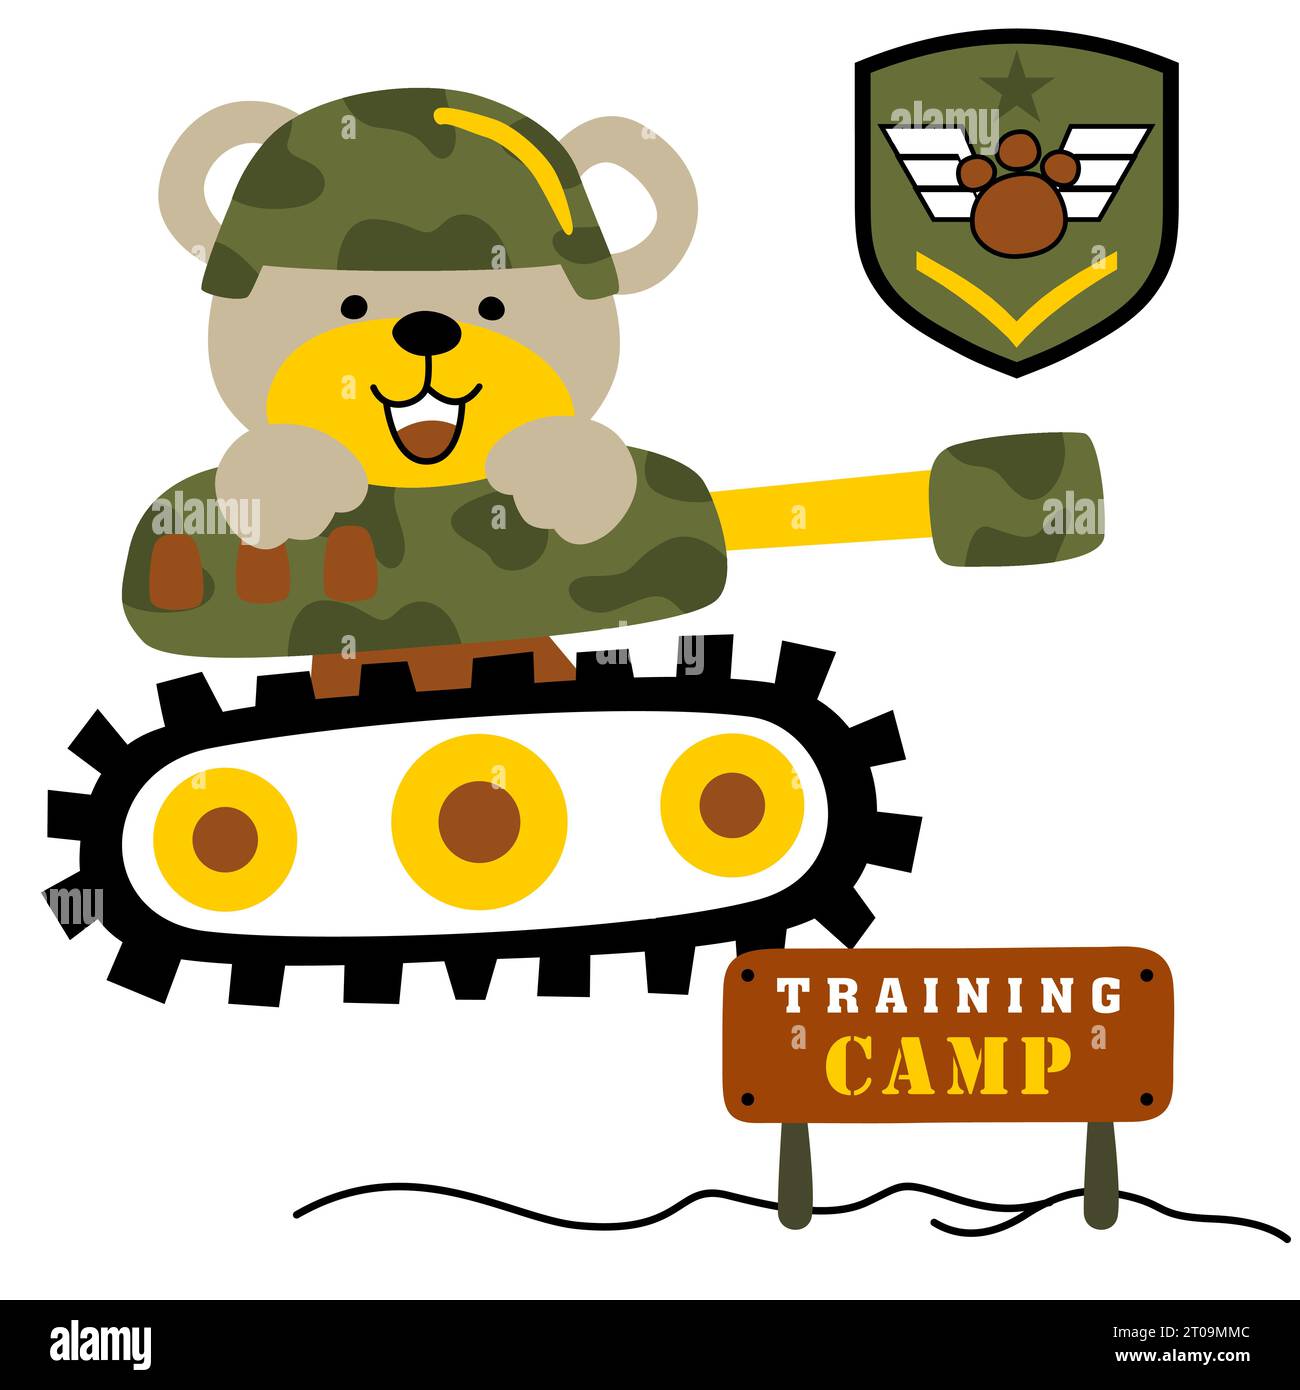 Niedlicher Bär, der Soldatenhelm auf gepanzertem Fahrzeug mit militärischen Elementen trägt, Vektor-Karikaturillustration Stock Vektor